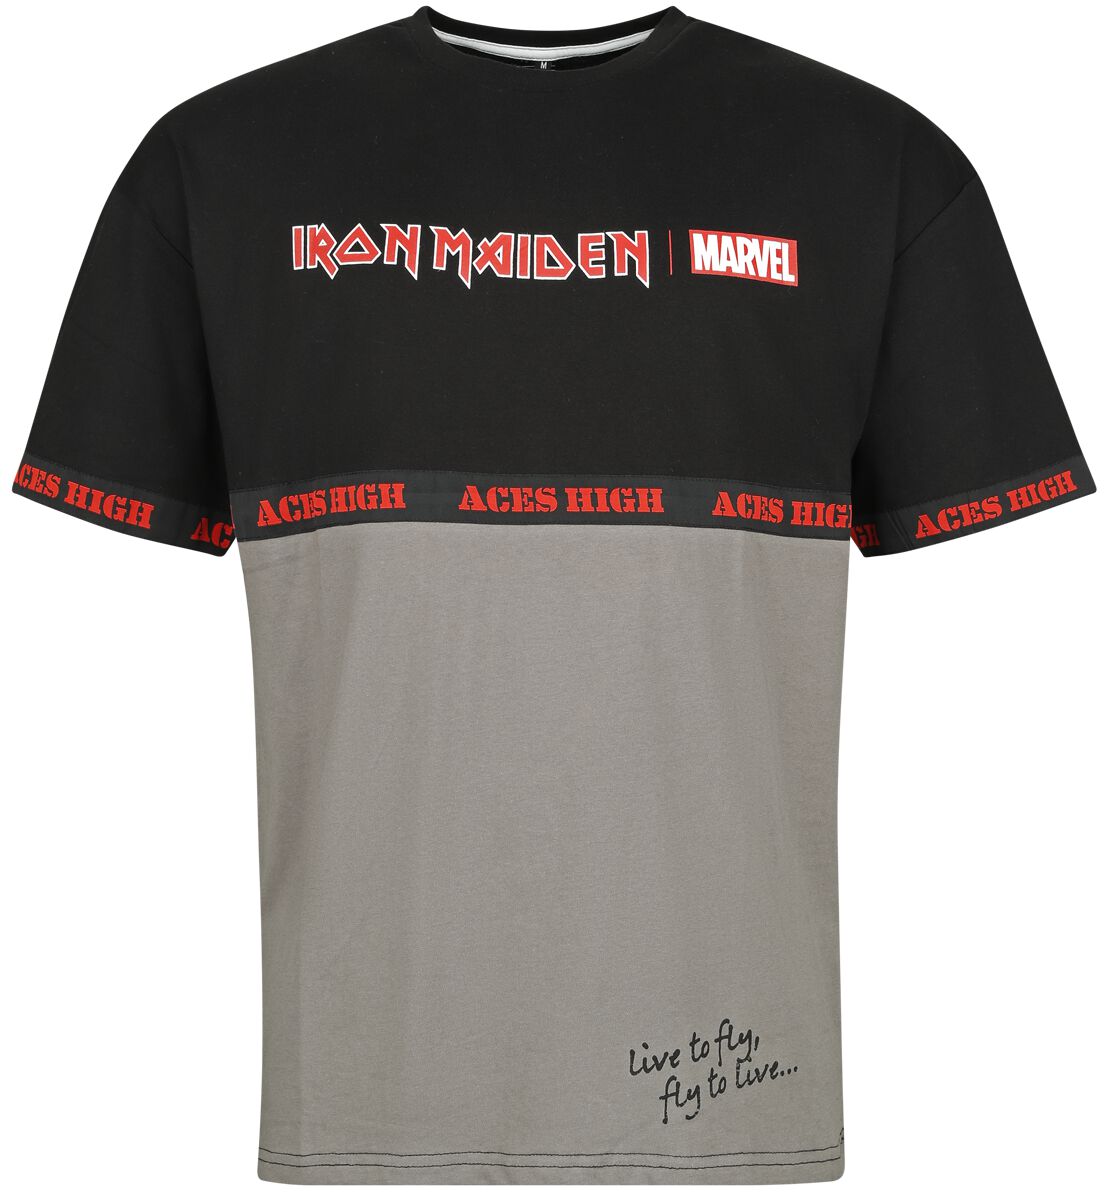 Iron Maiden Iron Maiden x Marvel Collection - Aces High War Machine T-Shirt schwarz grau in XXL